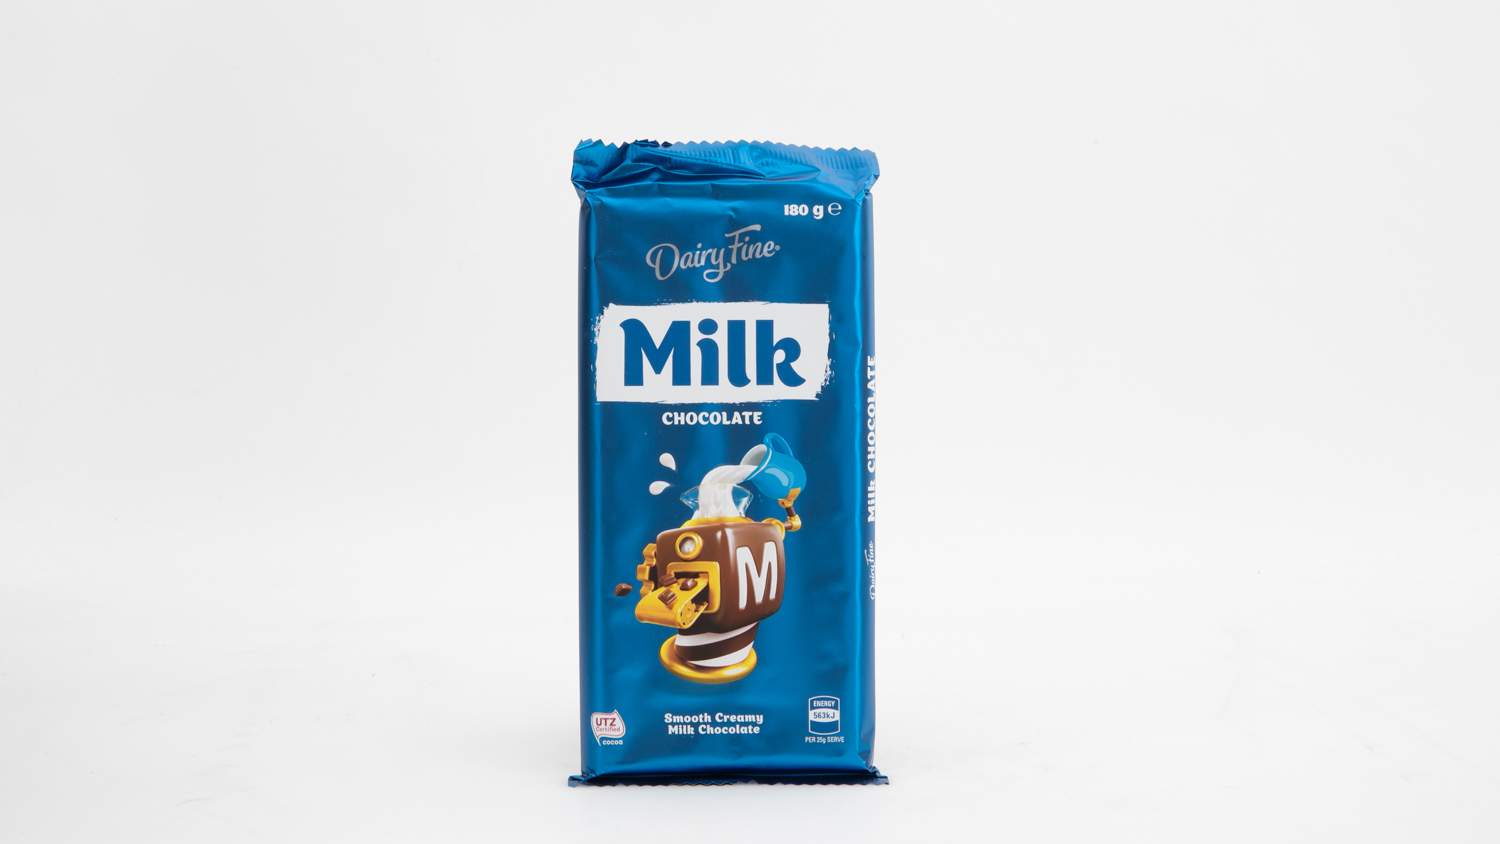 Aldi Dairy Fine Milk Chocolate carousel image